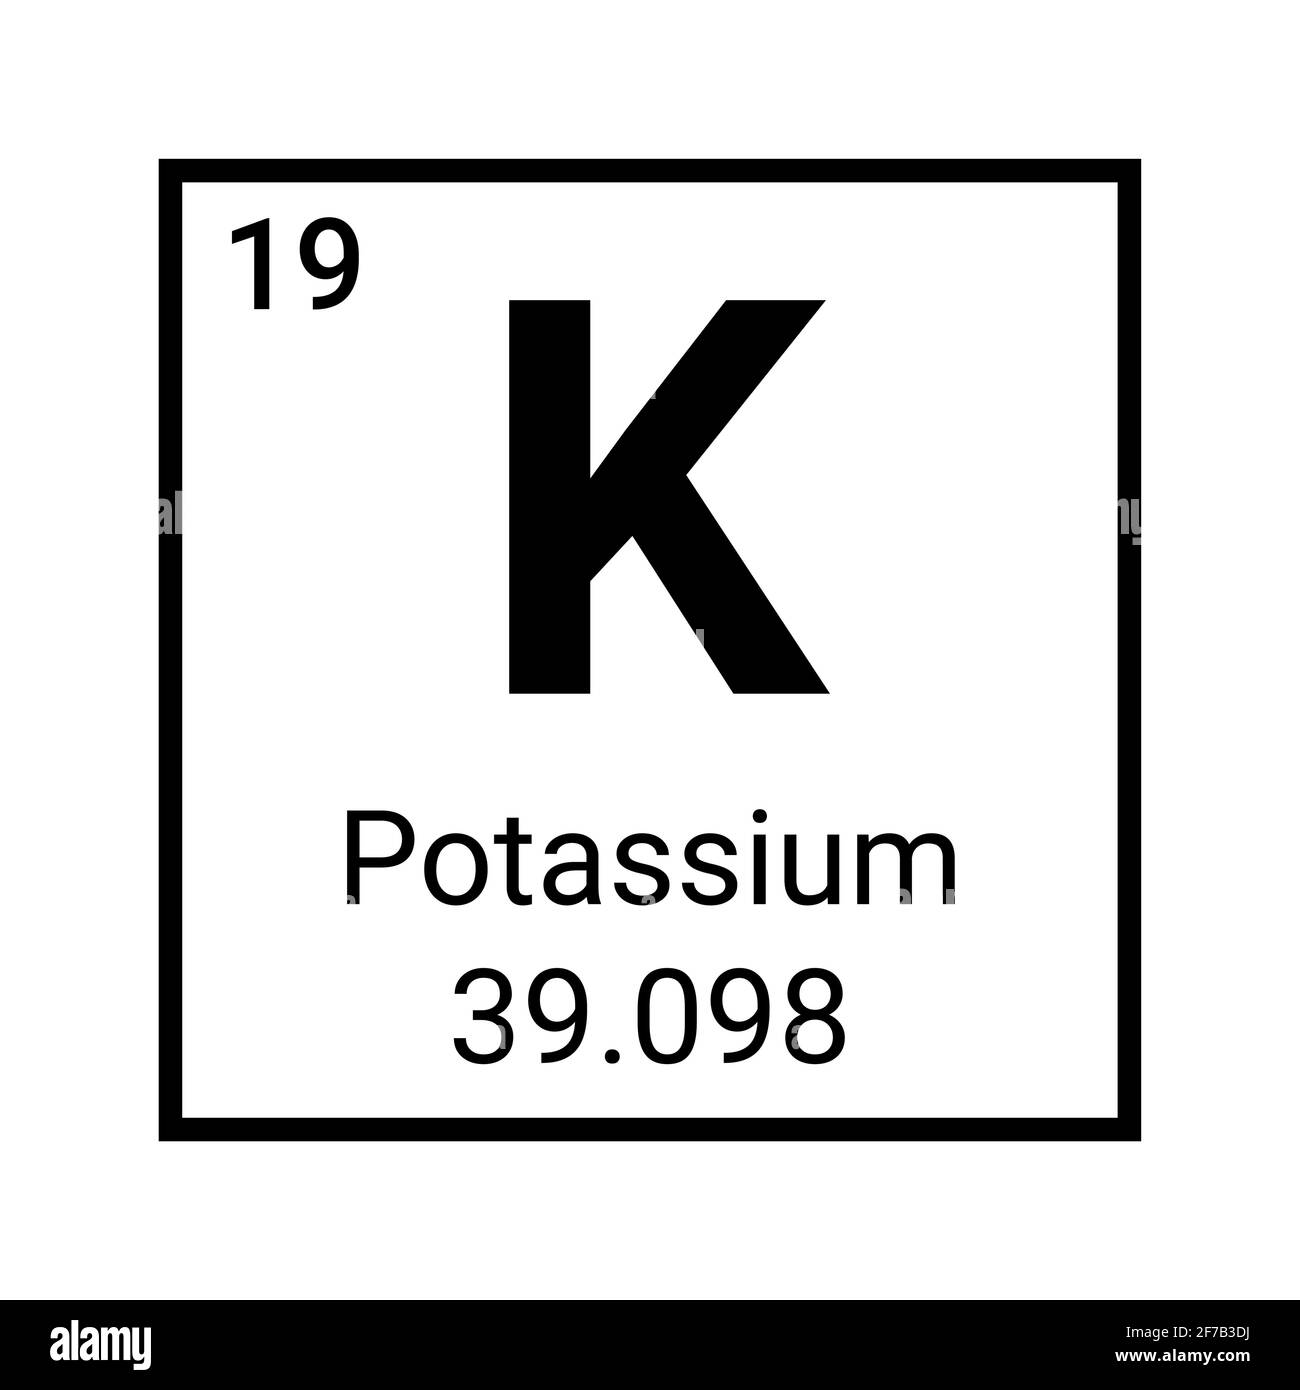 Potassium element periodic table symbol vector icon. Potassium chemistry element symbol Stock Vector